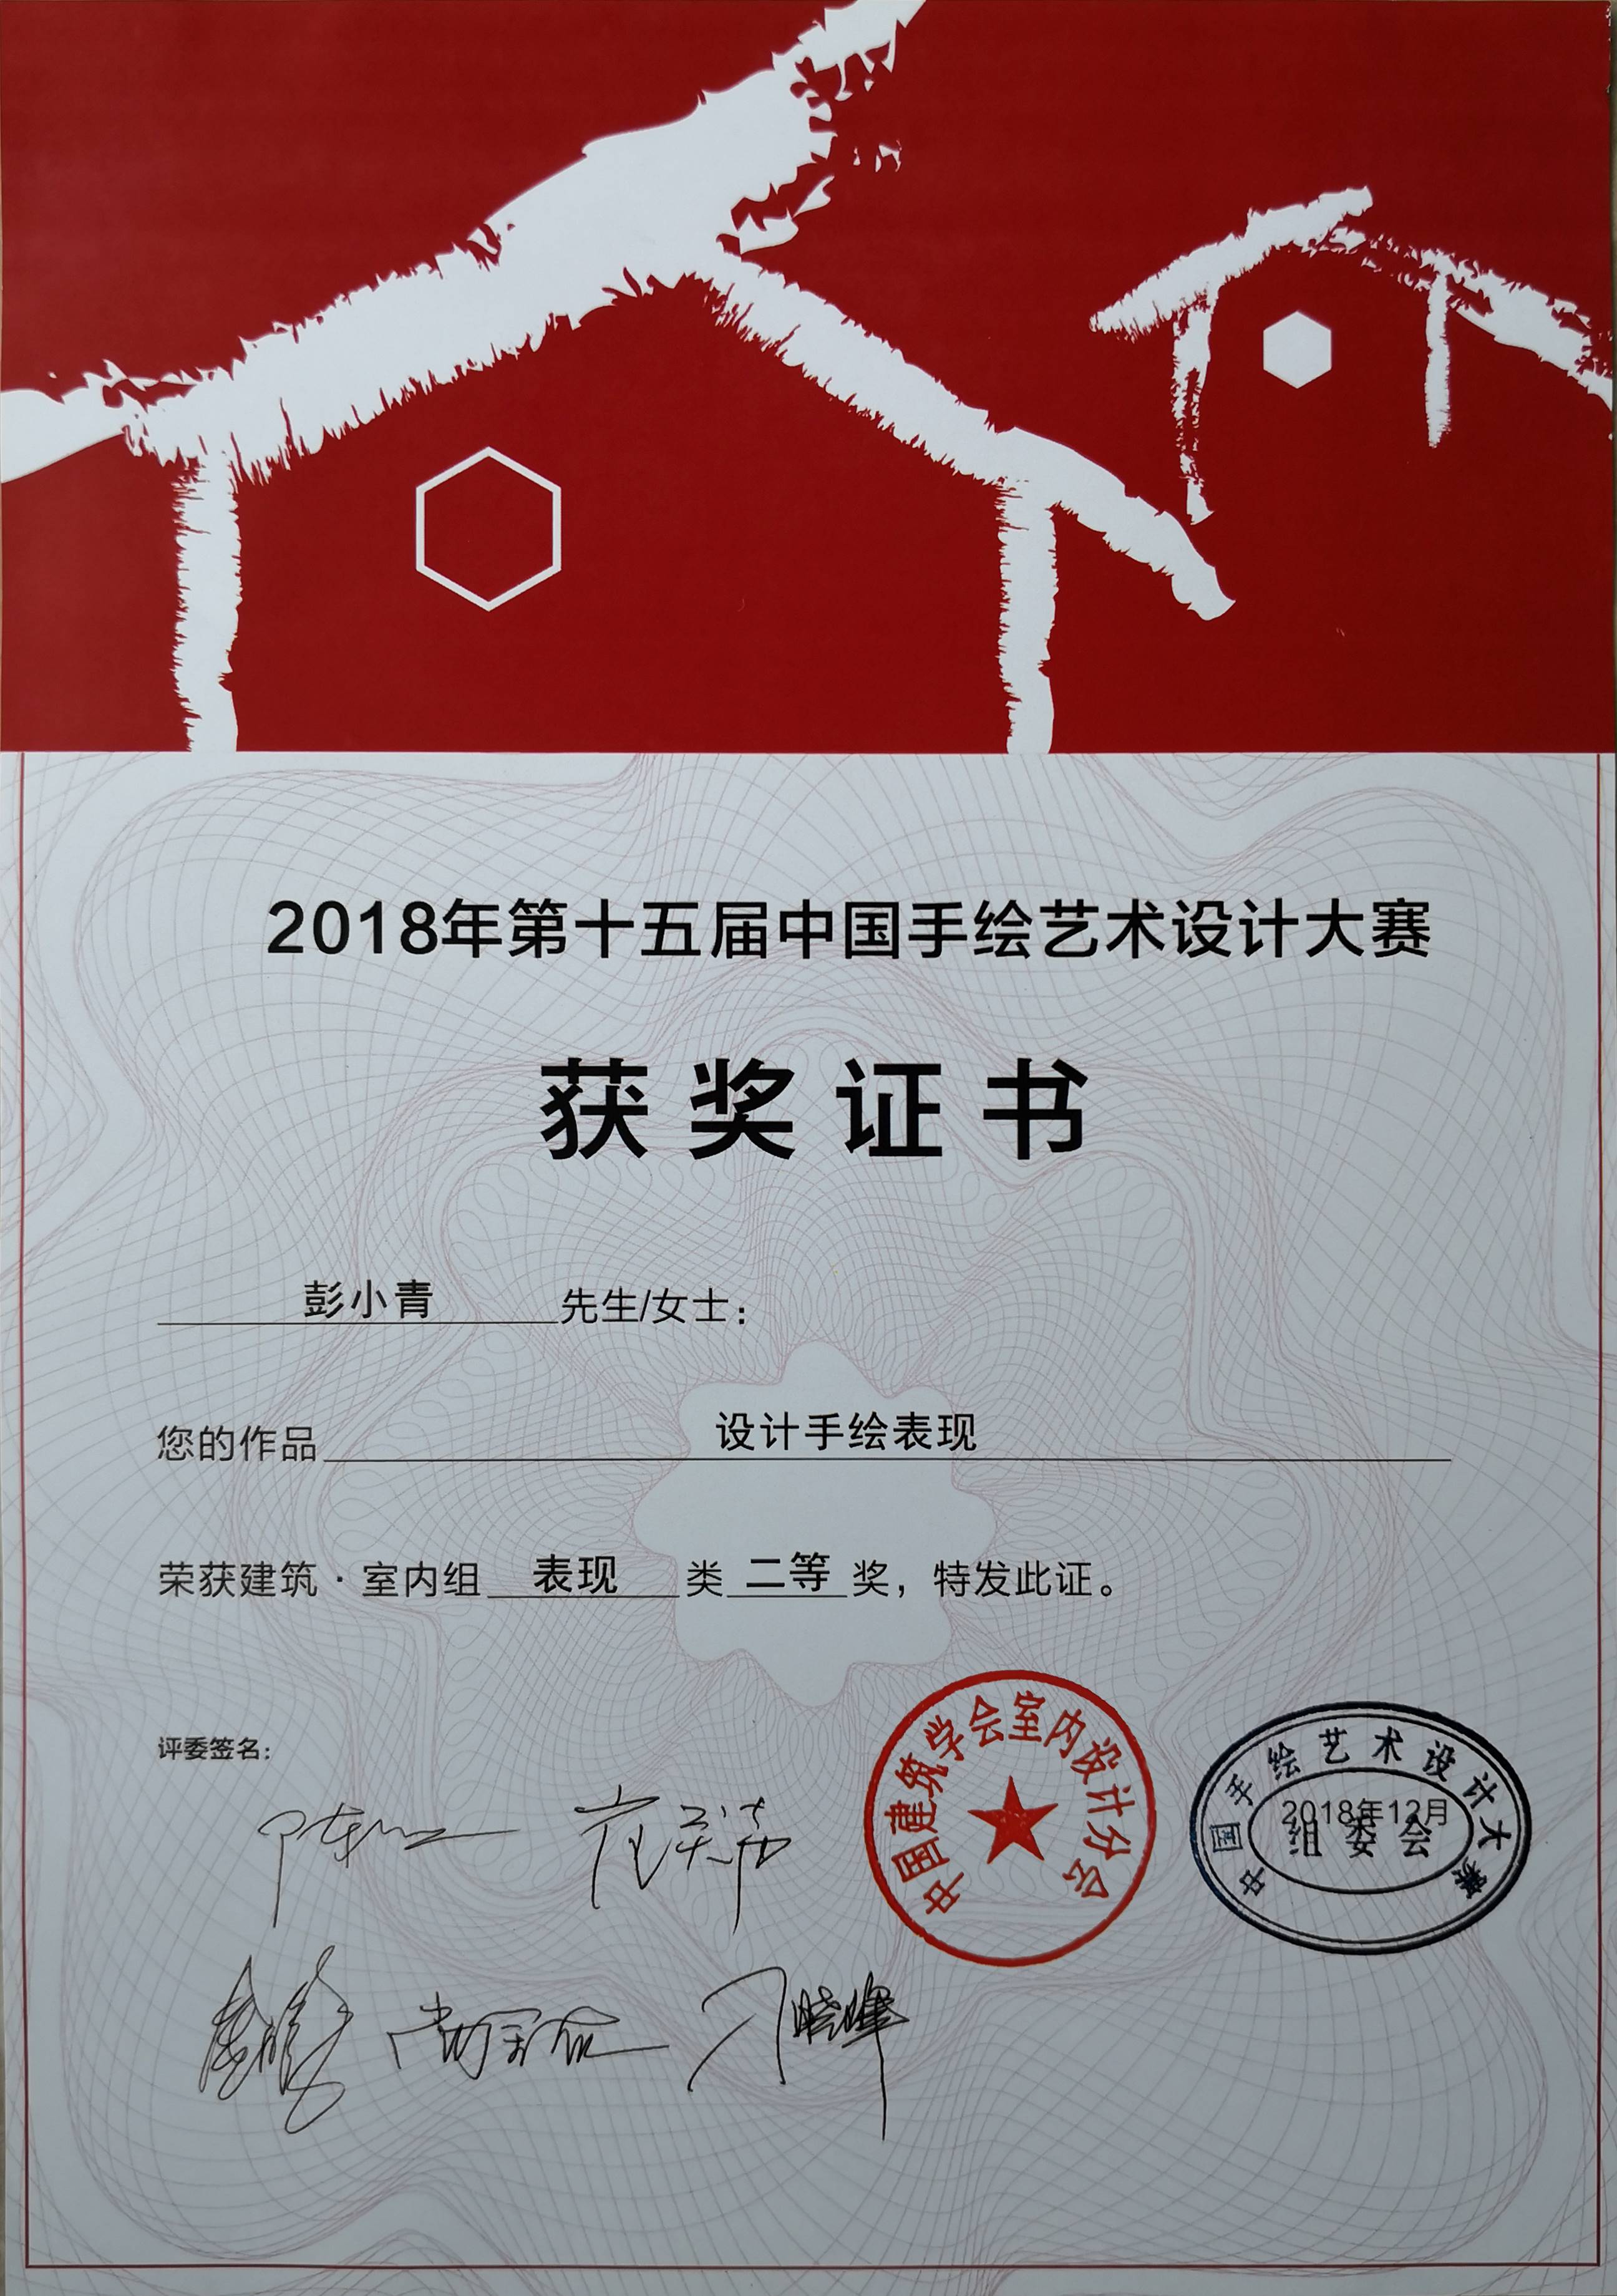 建筑工程学院教师在第十五届中国手绘艺术设计大赛中荣获专业组"二等